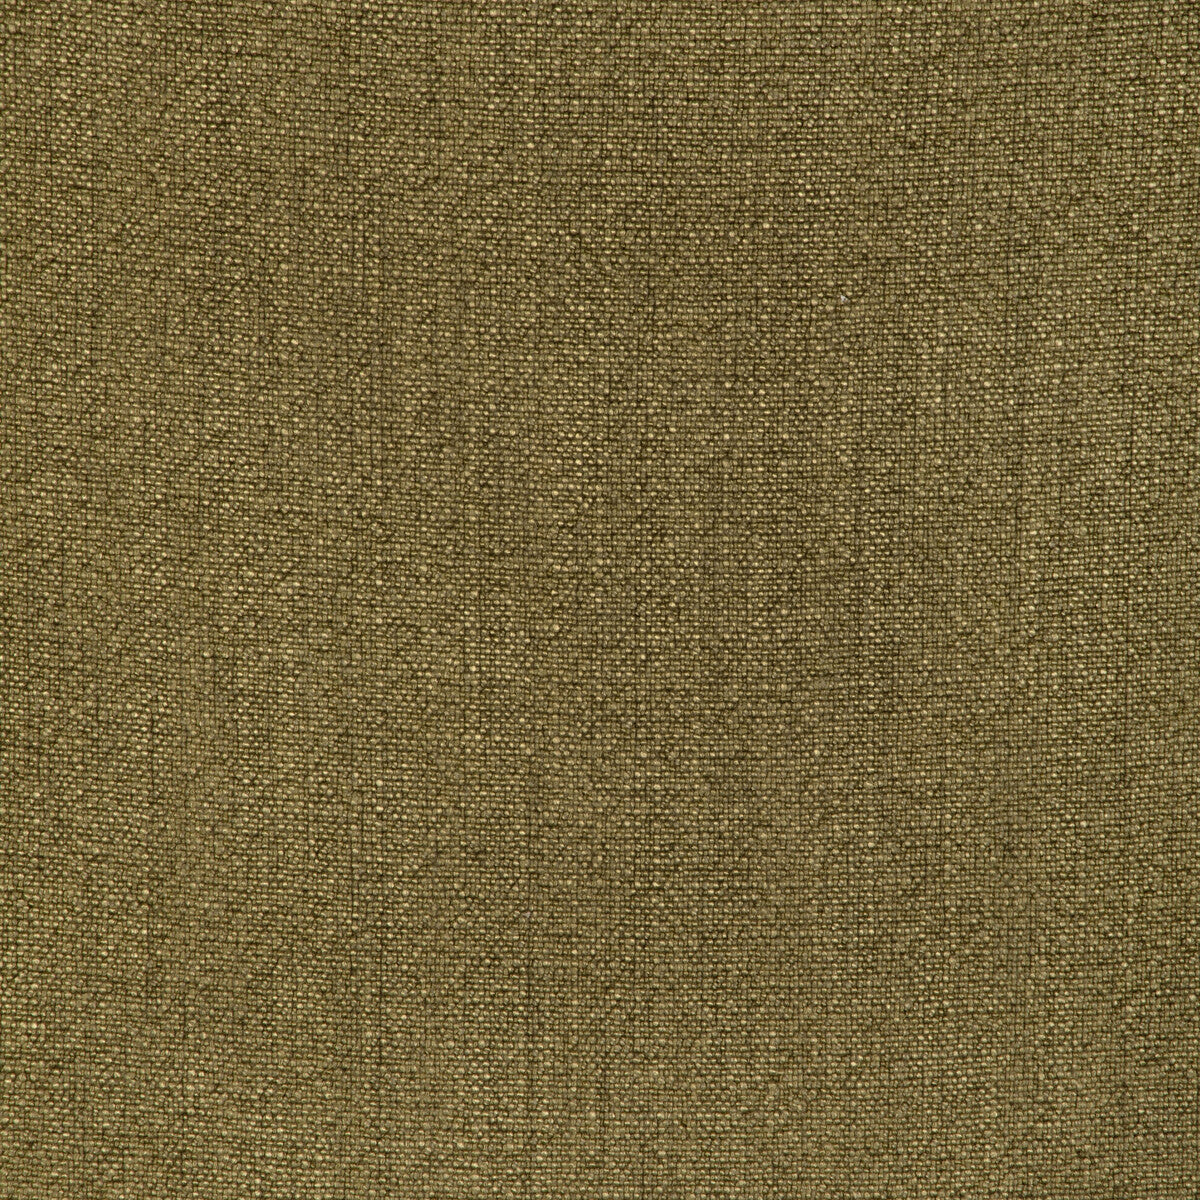 Kravet Basics fabric in 35189-314 color - pattern 35189.314.0 - by Kravet Basics